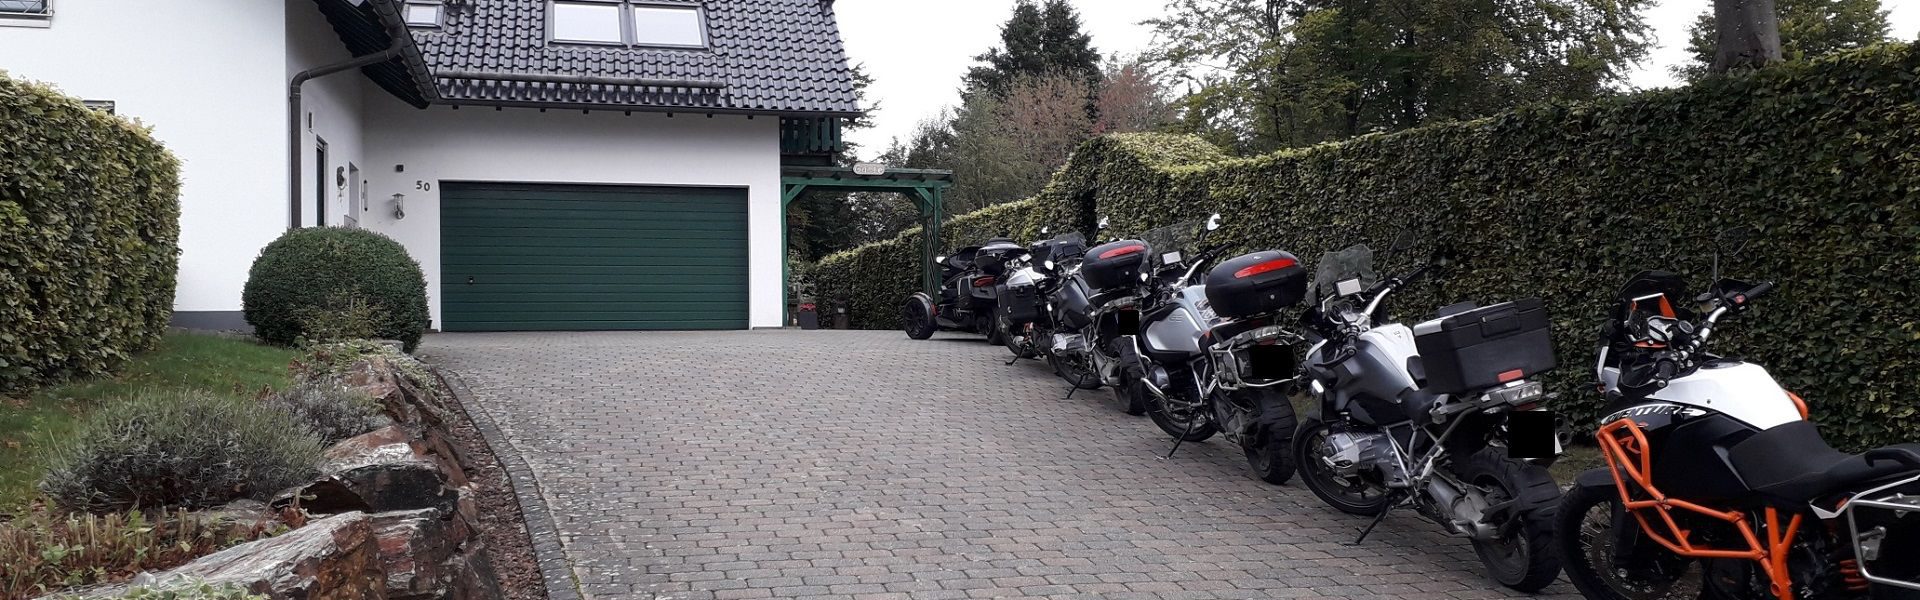 Gästehaus mit Motorrädern